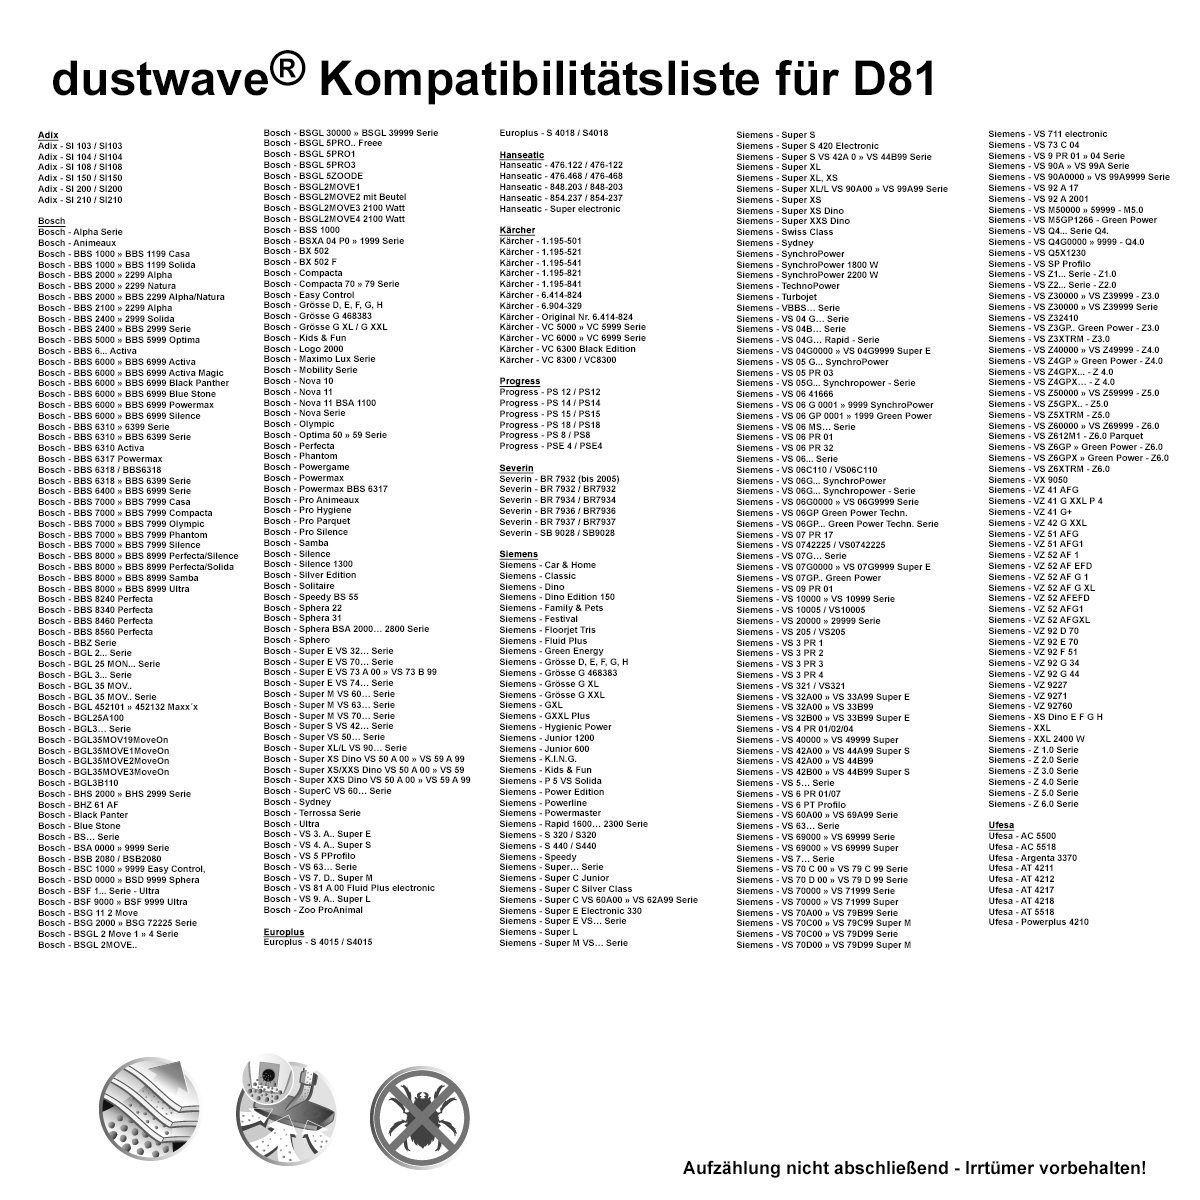 + Dustwave SI Megapack, Megapack, 20 Staubsaugerbeutel 15x15cm Premium Aldi / 200 2 Aldi 20 (ca. - Hepa-Filter SI200, Staubsaugerbeutel SI zuschneidbar) - St., passend 200 SI200 / für